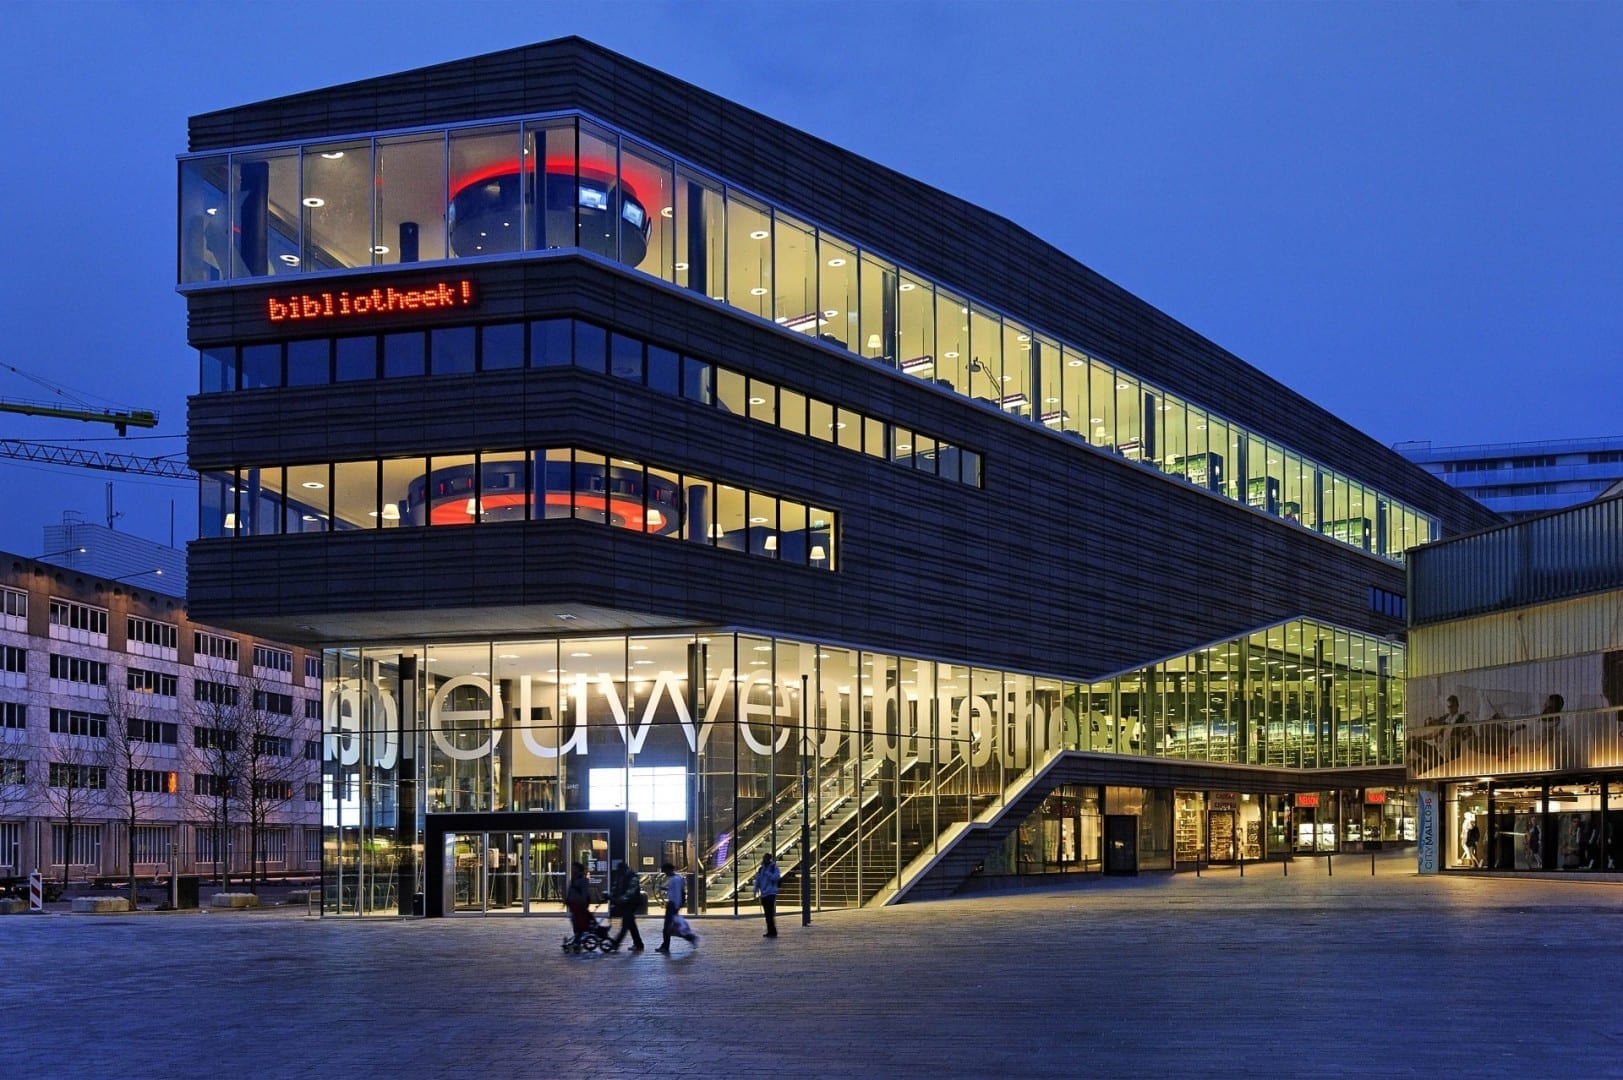 Comience su recorrido visitando el VVV Almere en la Nueva Biblioteca Almere Países Bajos